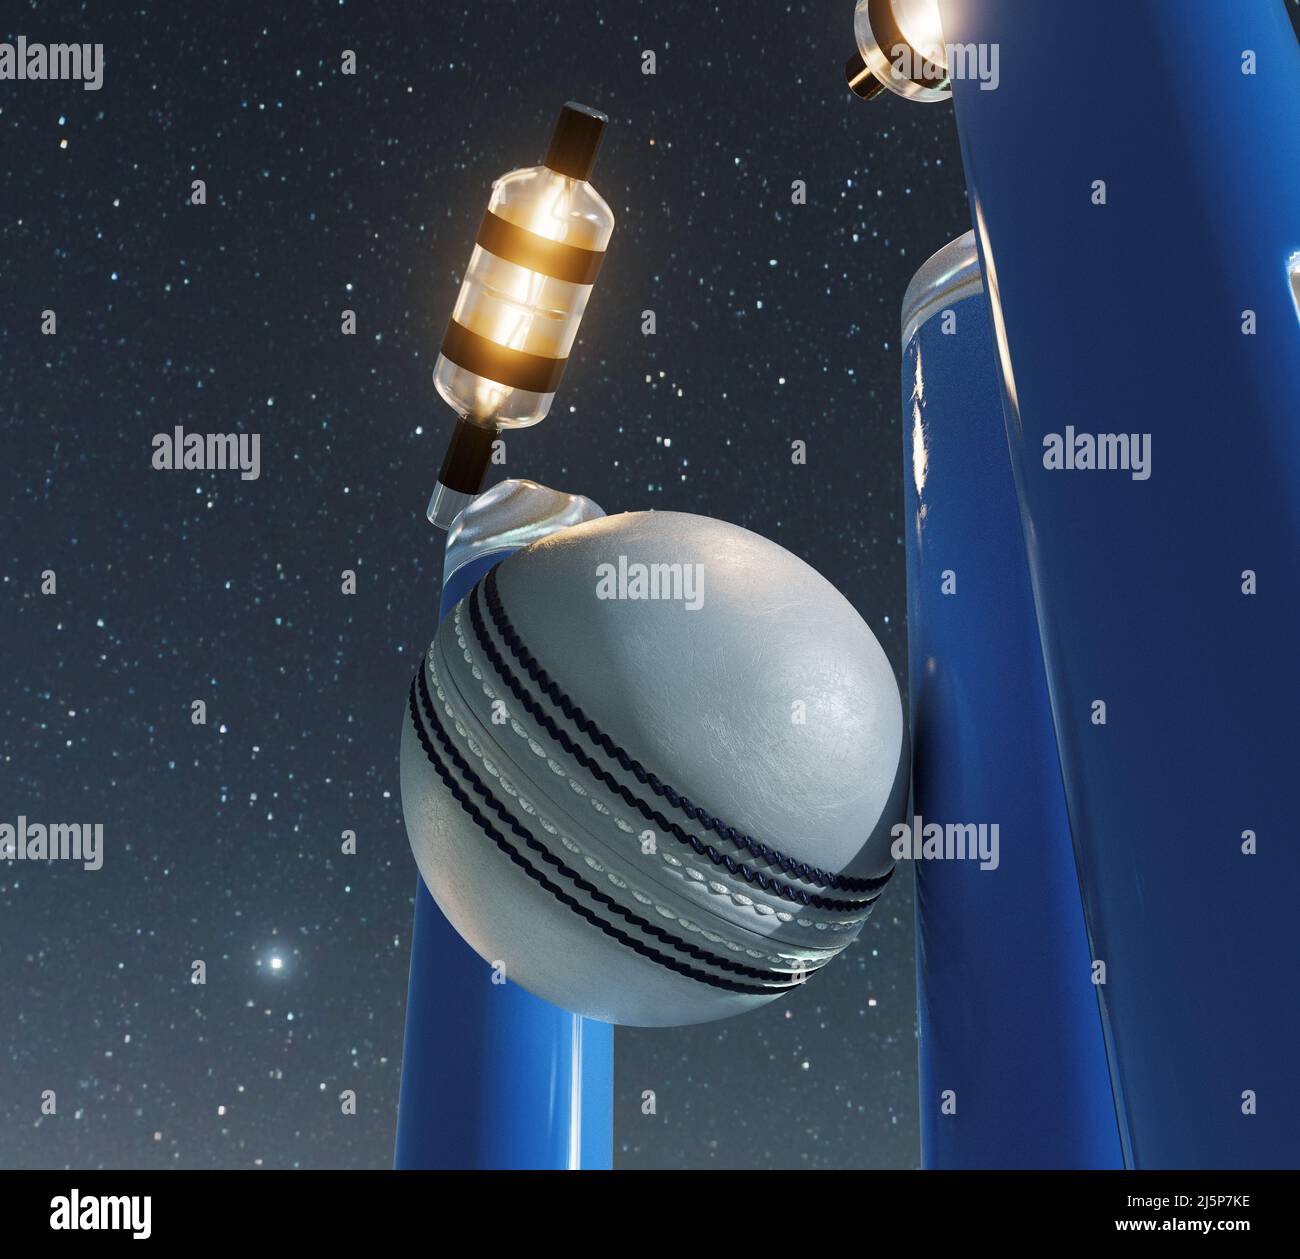 Blaue elektronische Cricket-Wickets mit auslaufenden Bällen und leuchtenden LED-Leuchten auf einem Nachthimmel Hintergrund - 3D Render Stockfoto